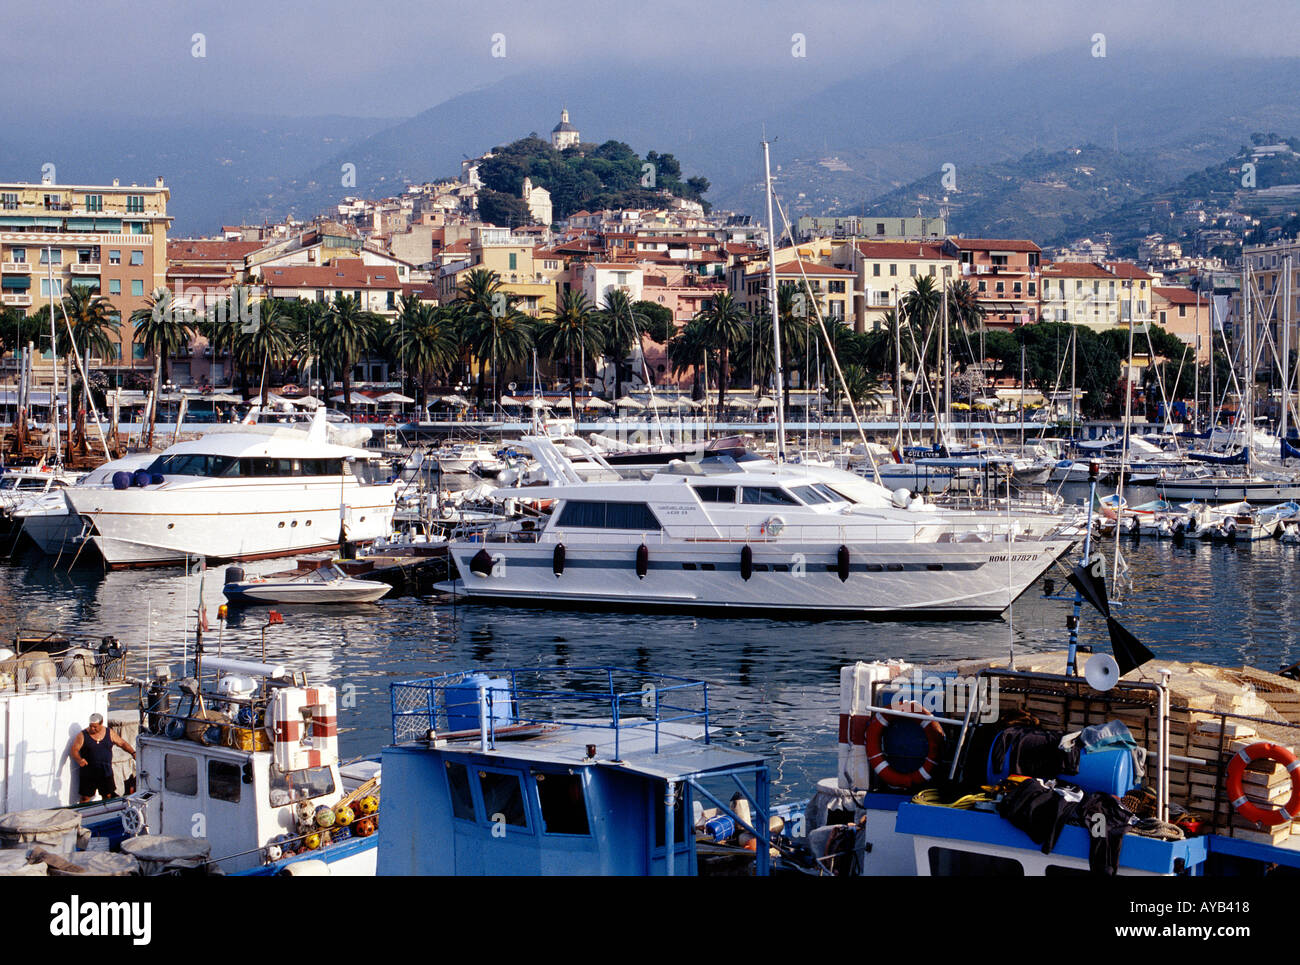 El puerto de San Remo moderno complejo de vacaciones en la Riviera Italiana Foto de stock